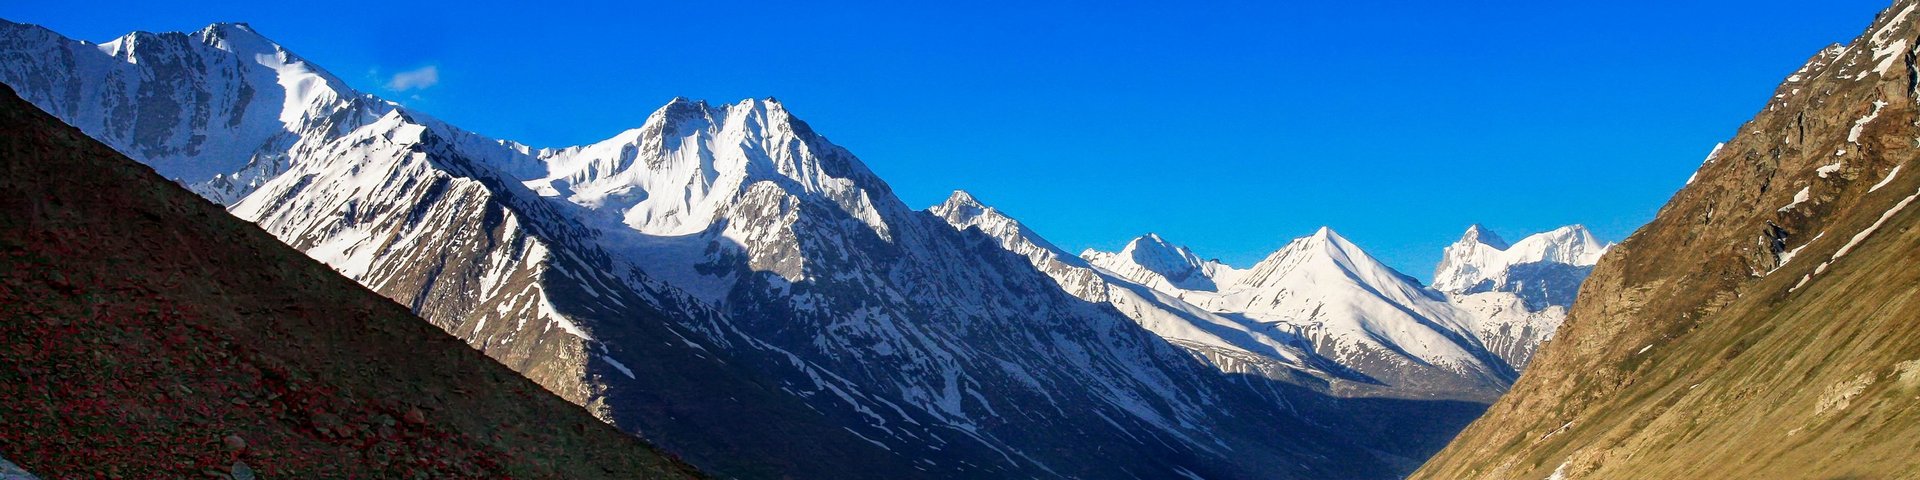 Imposante Bergwelt zwischen Spiti und Ladakh im Himalaya